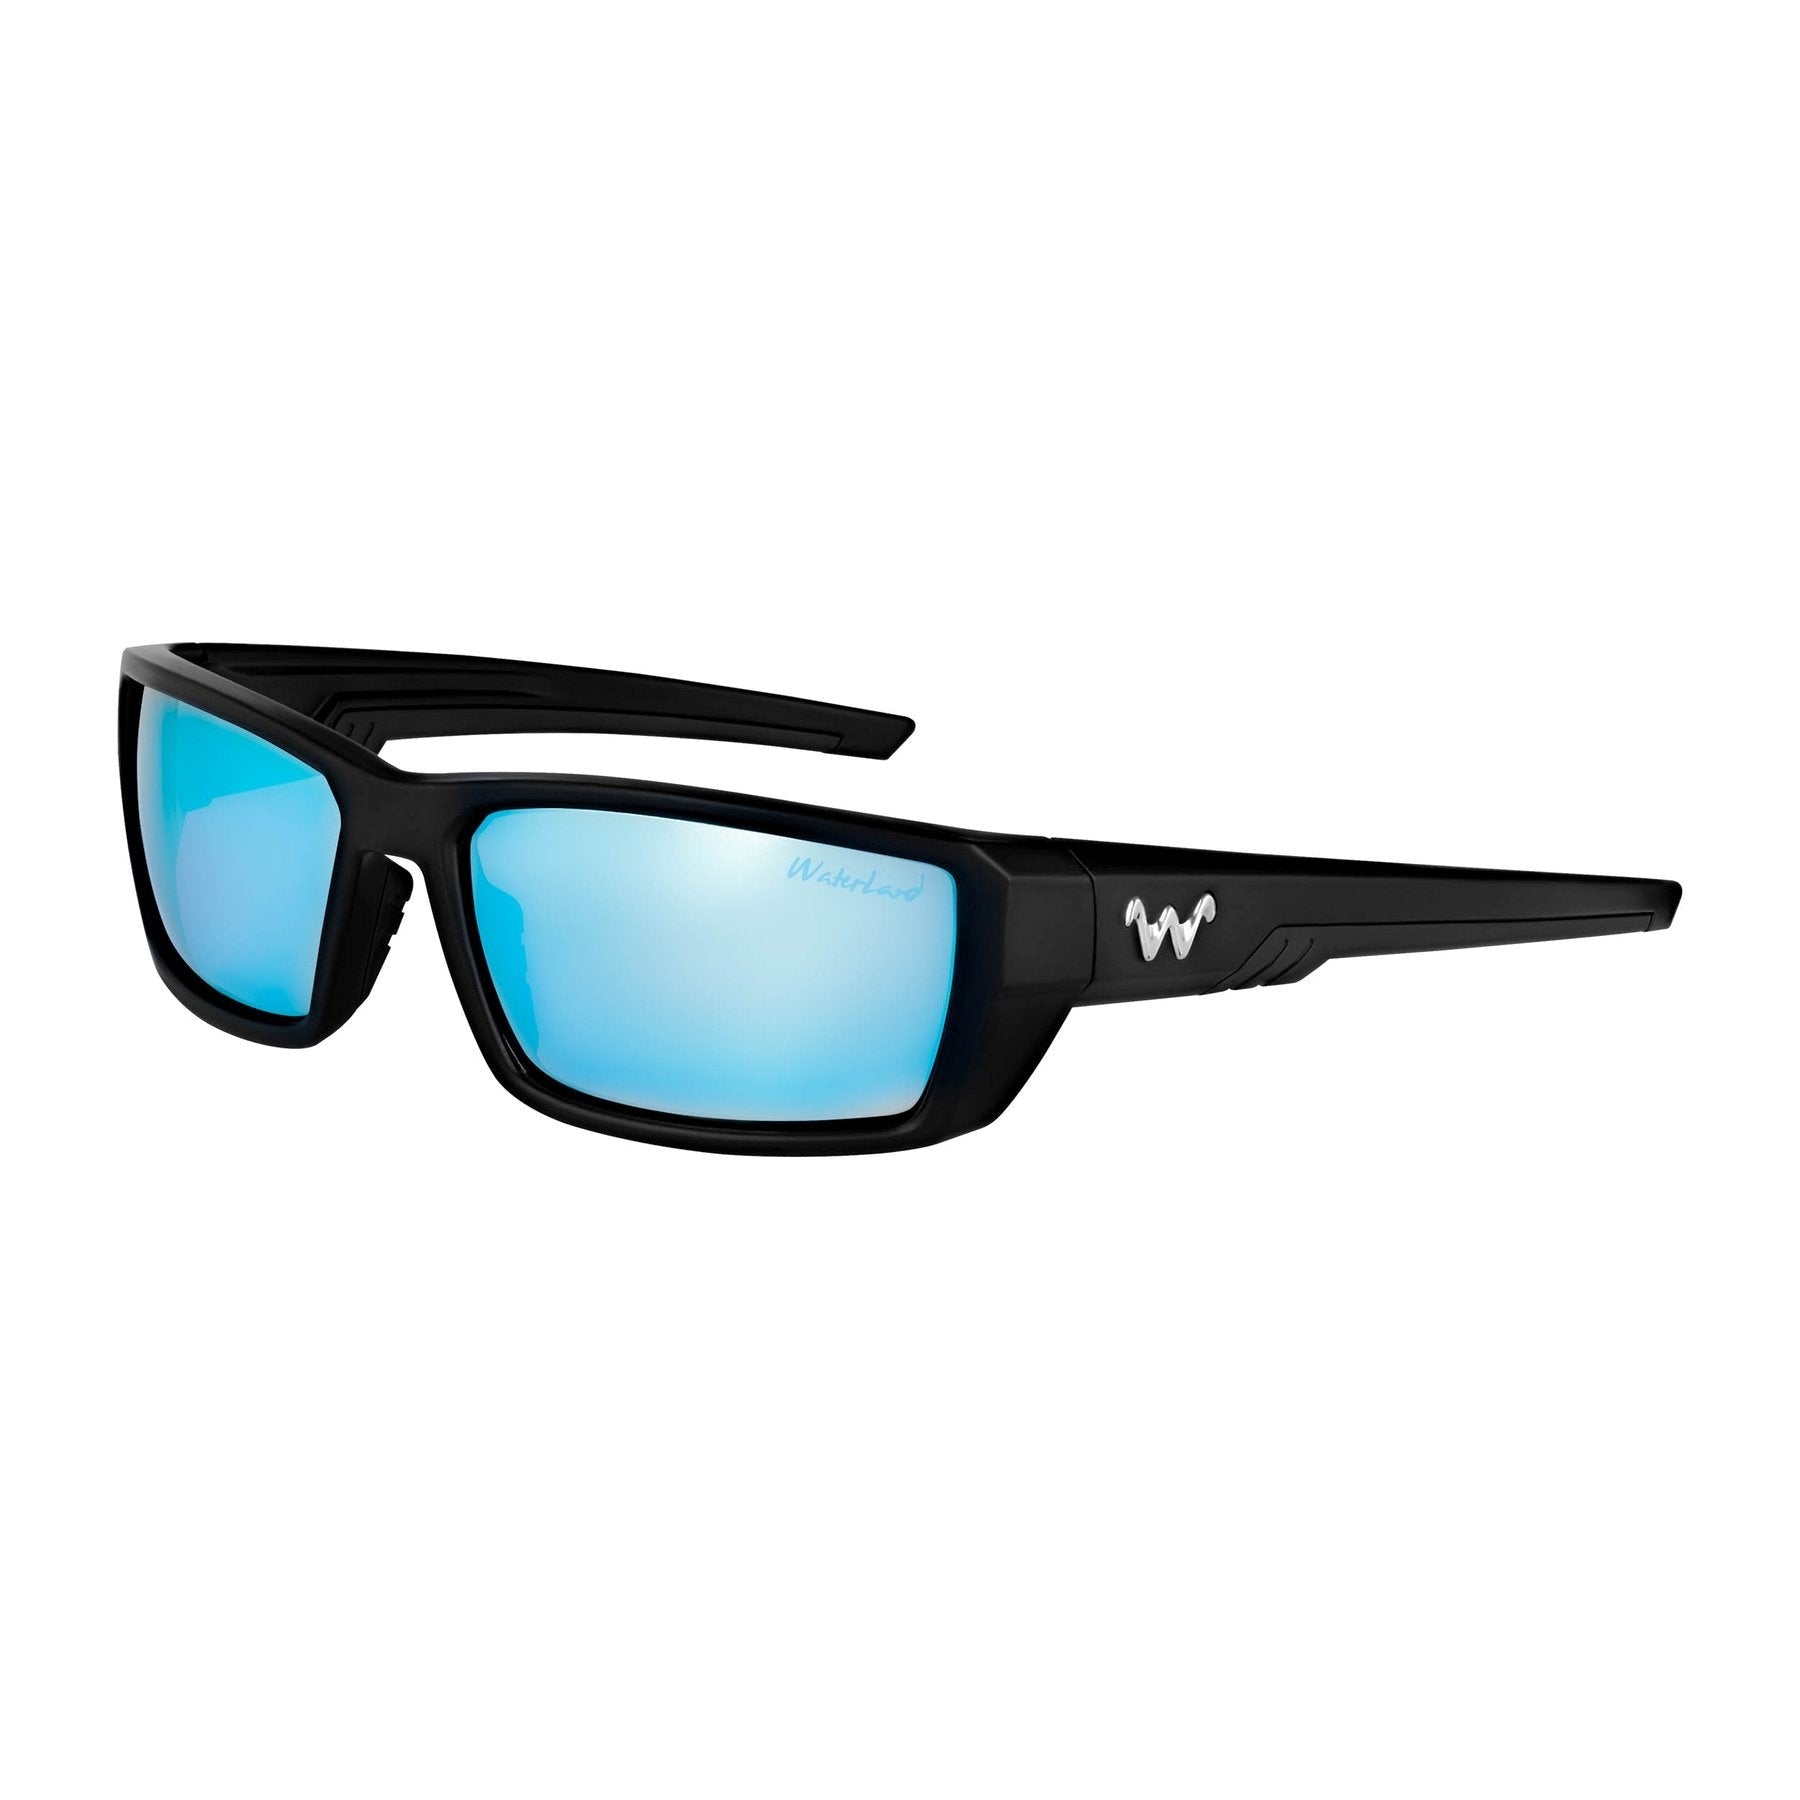 Waterland Ashor Polarized Sunglasses